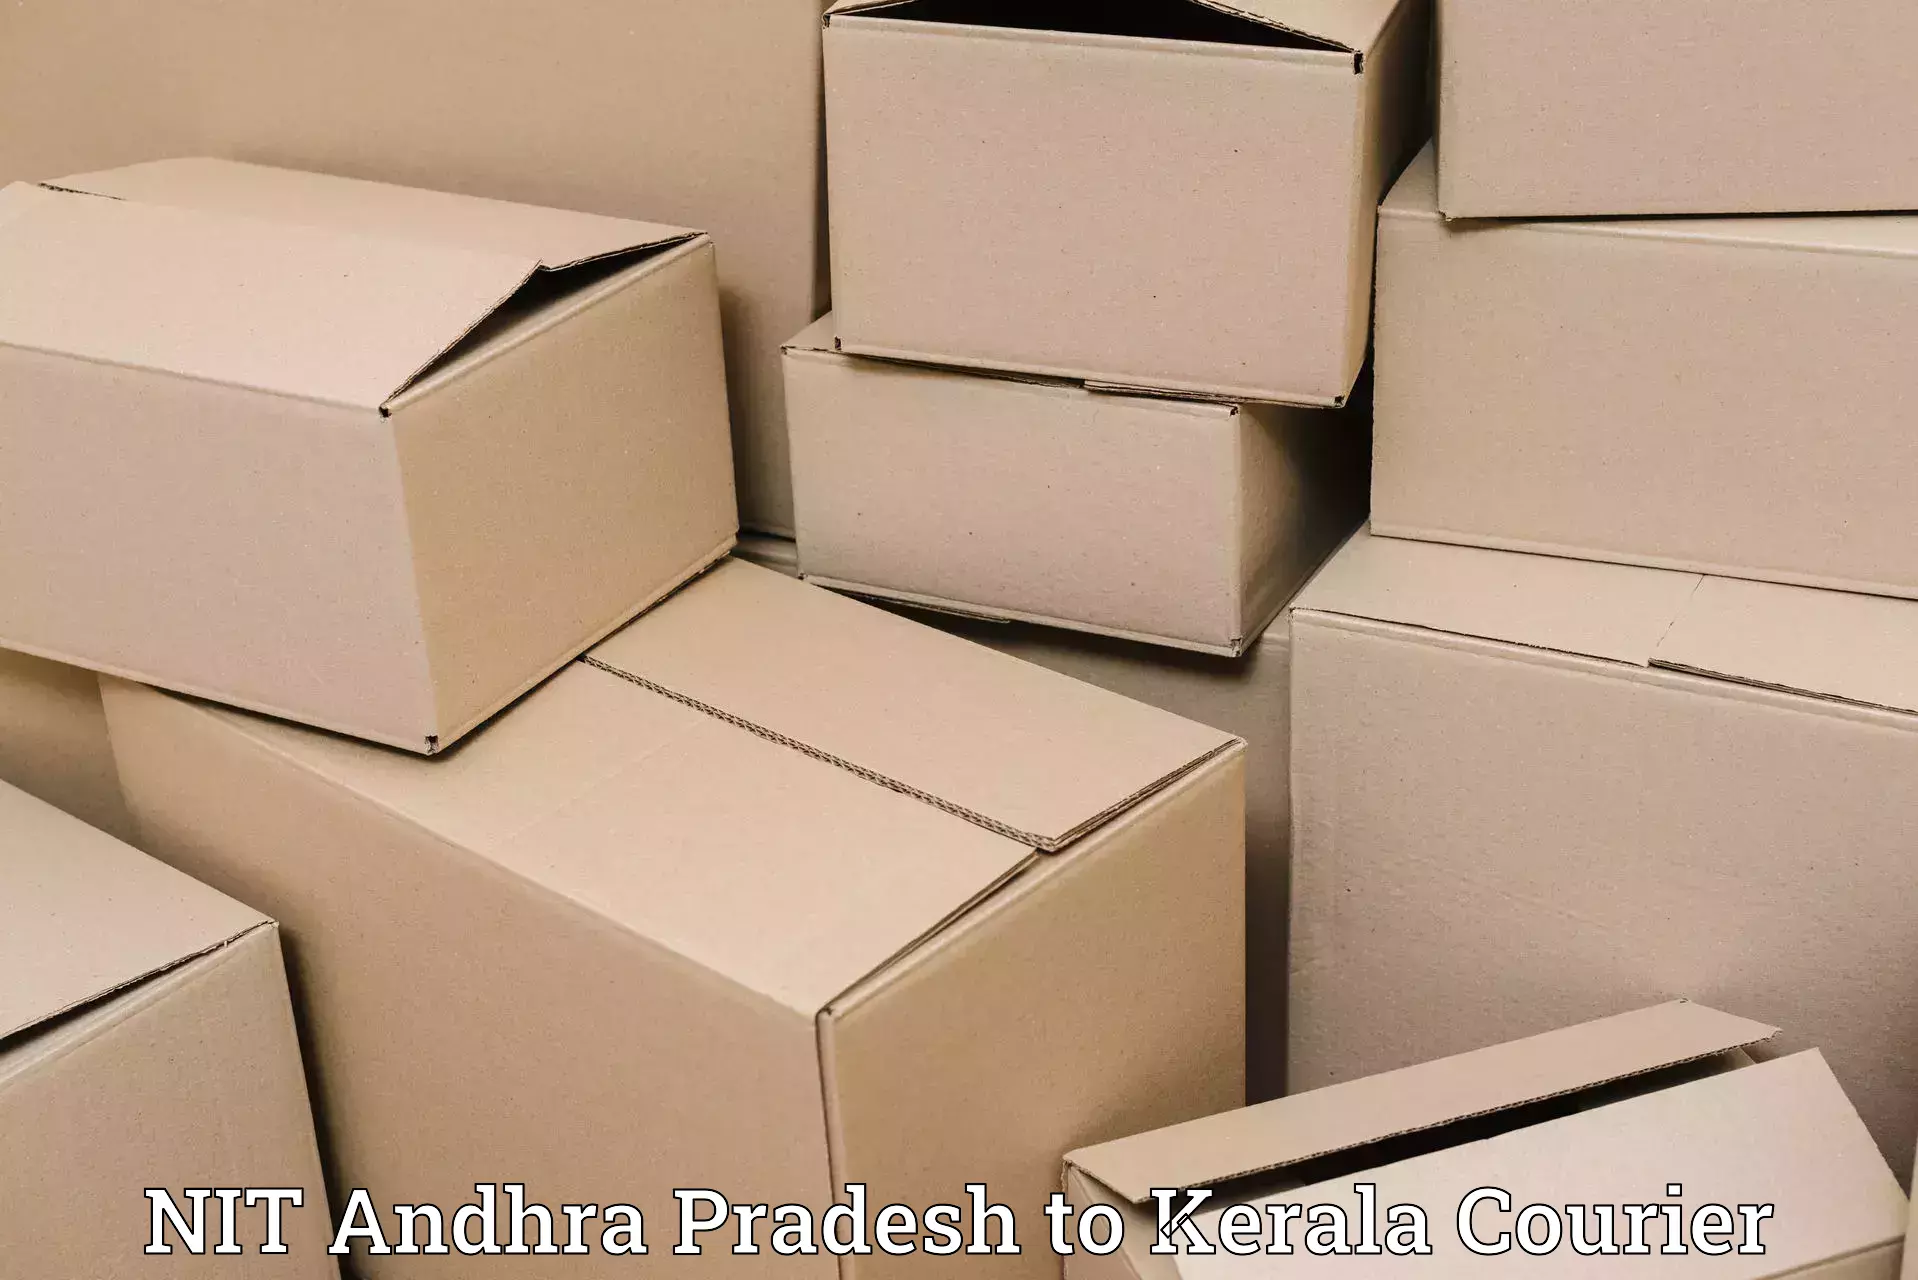 Quality courier services NIT Andhra Pradesh to Calicut University Malappuram